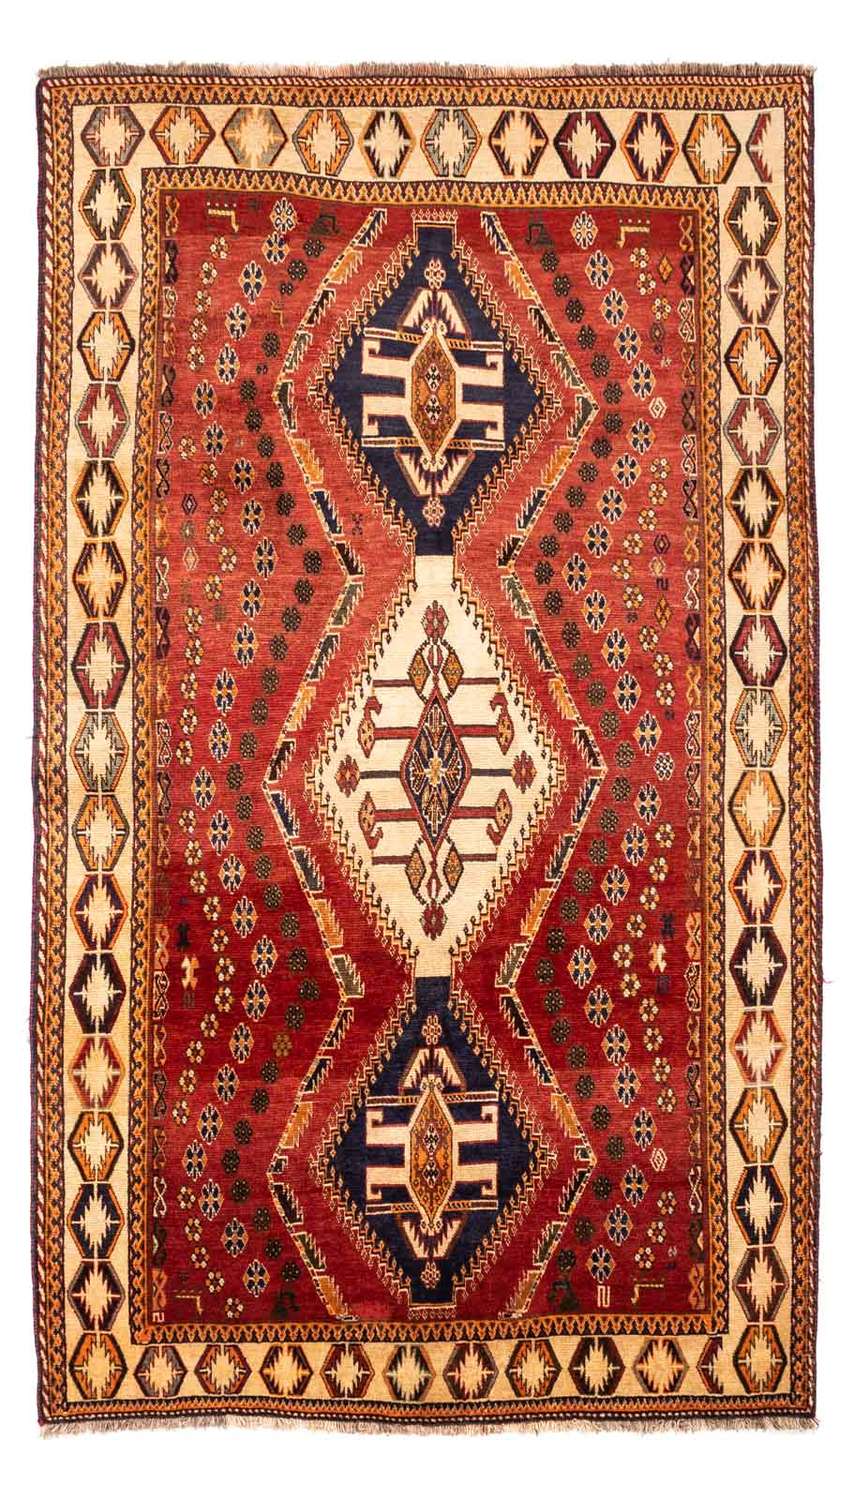 Tapis persan - Nomadic - 270 x 152 cm - rouge